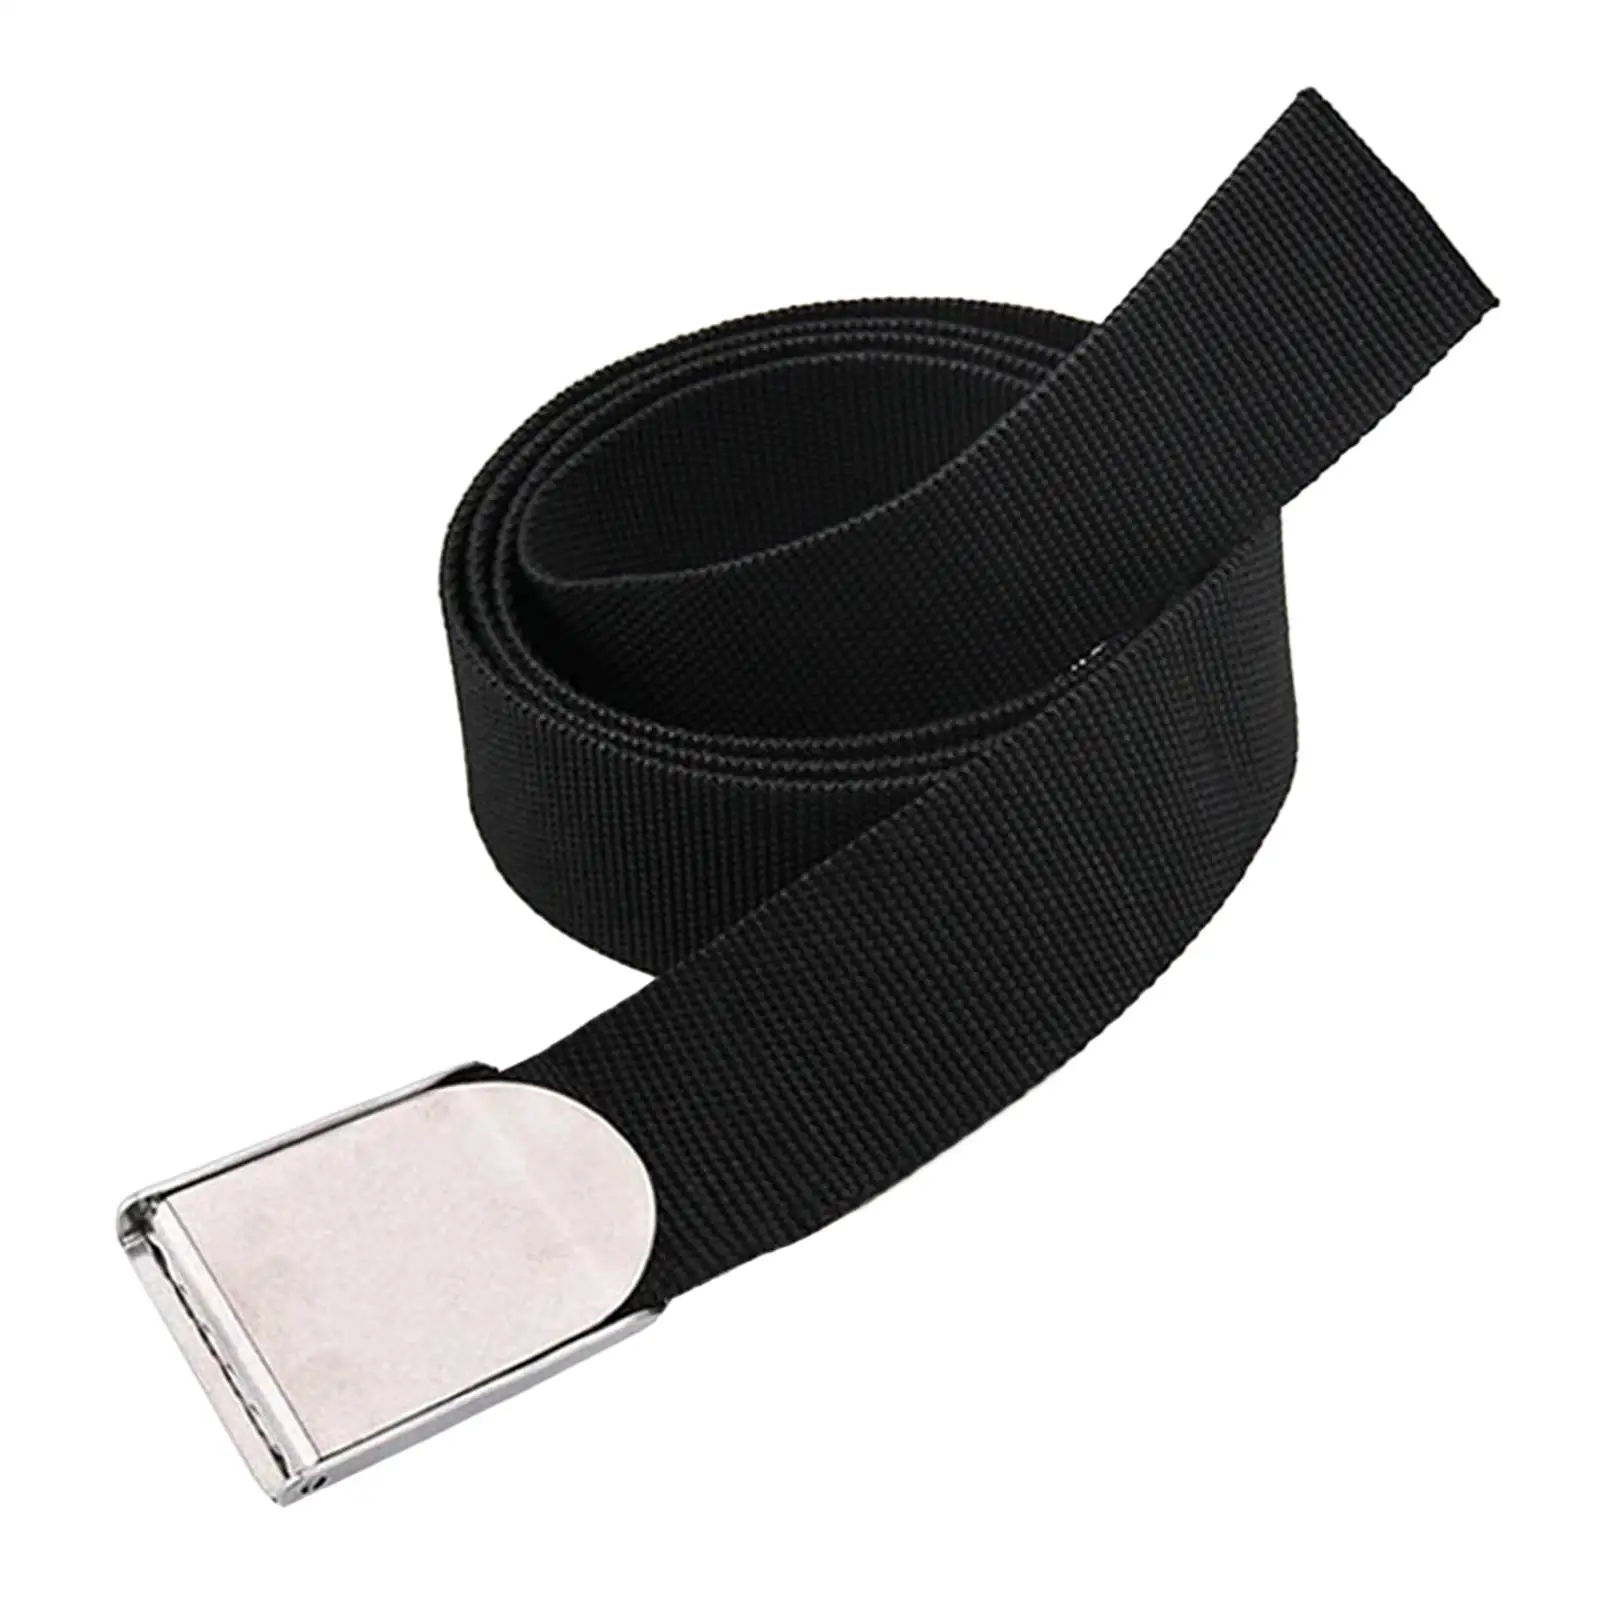 Diving Weight Waist Belt Quick Release Buckle Portable Convenient Webbing Weight Pouch Belt